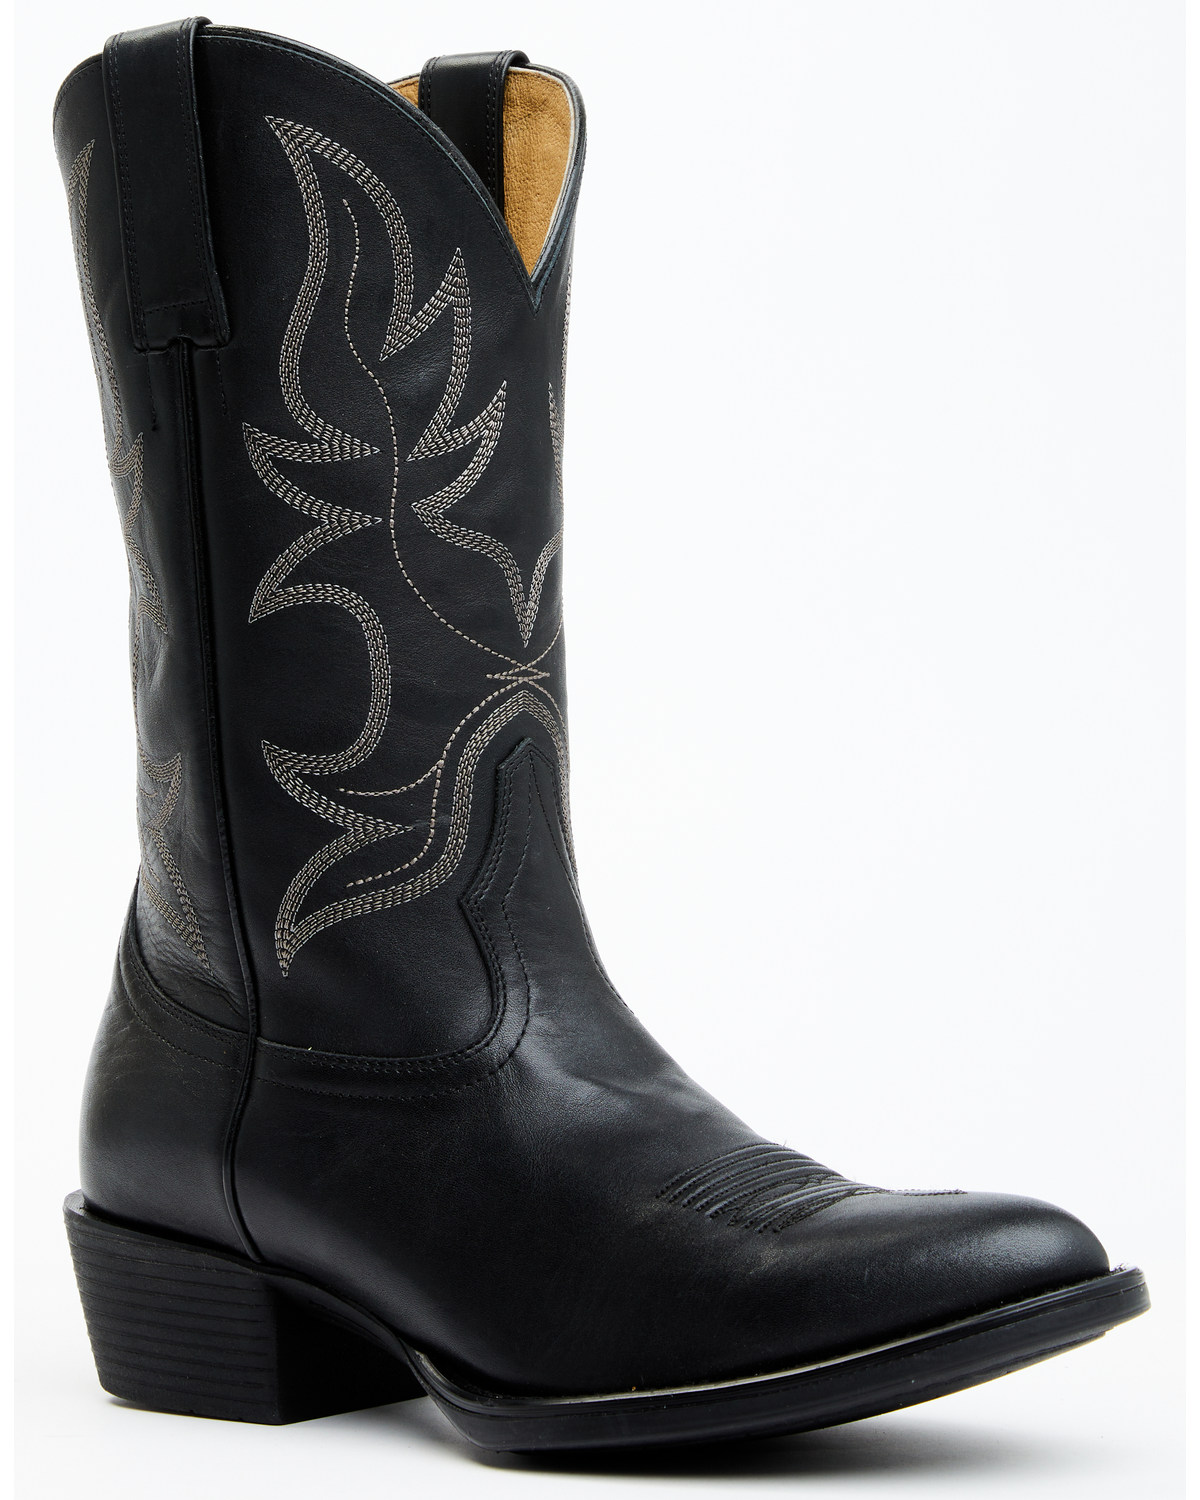 Cody James Men's Larsen Western Boots